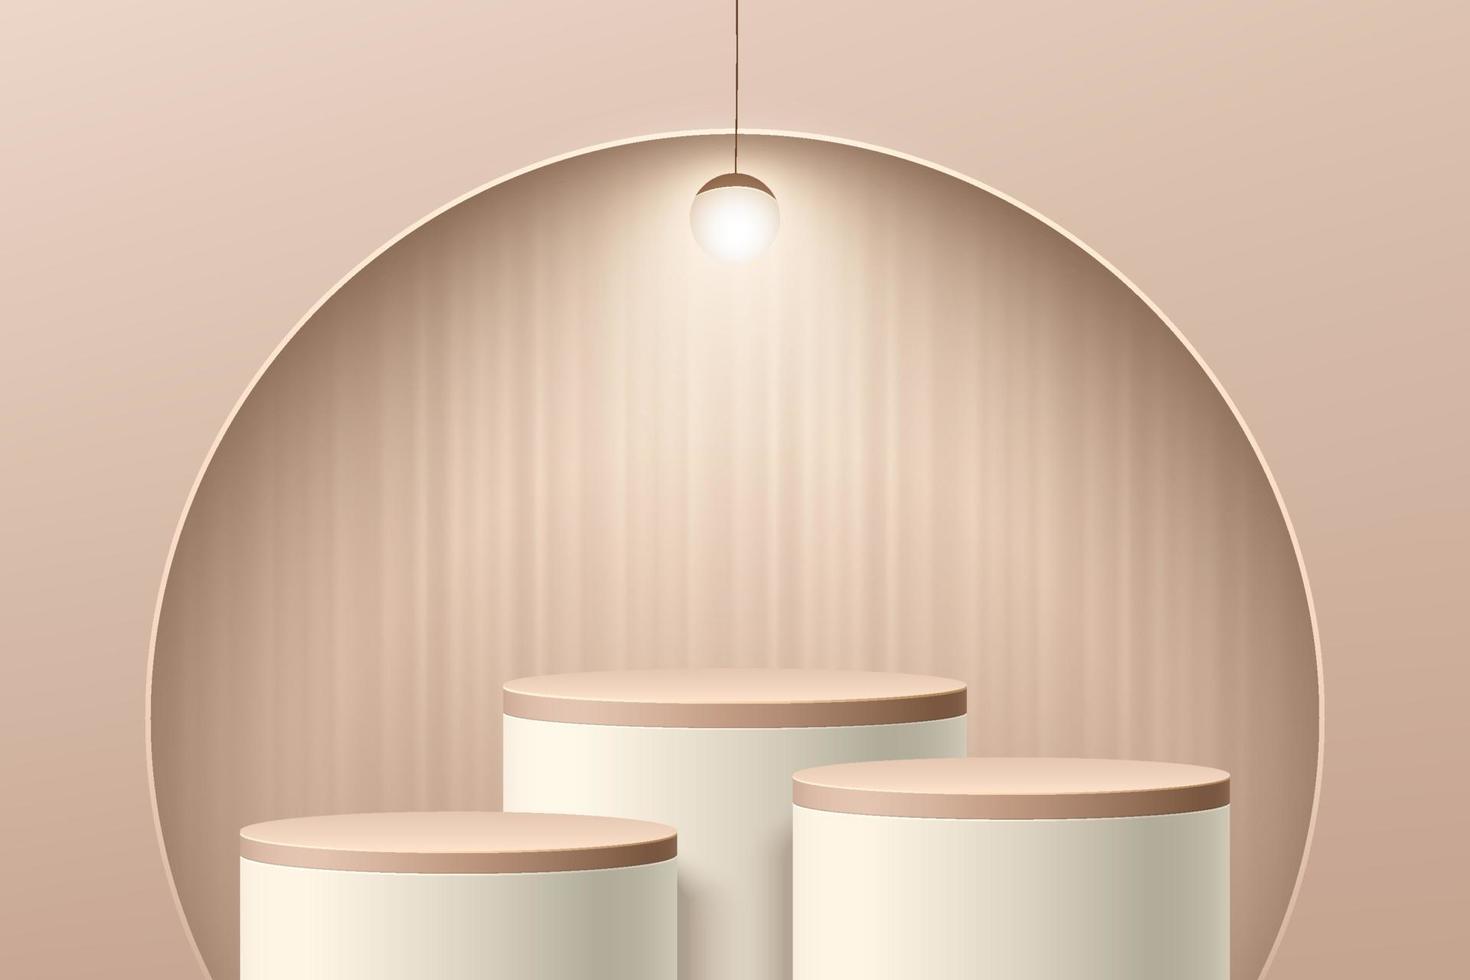 abstrakt beige 3d-rum med cylinderpiedestal eller ståpodium i halvcirkelfönster på väggen. minimal scen för presentation av kosmetiska produkter. vektor geometrisk rendering plattform design